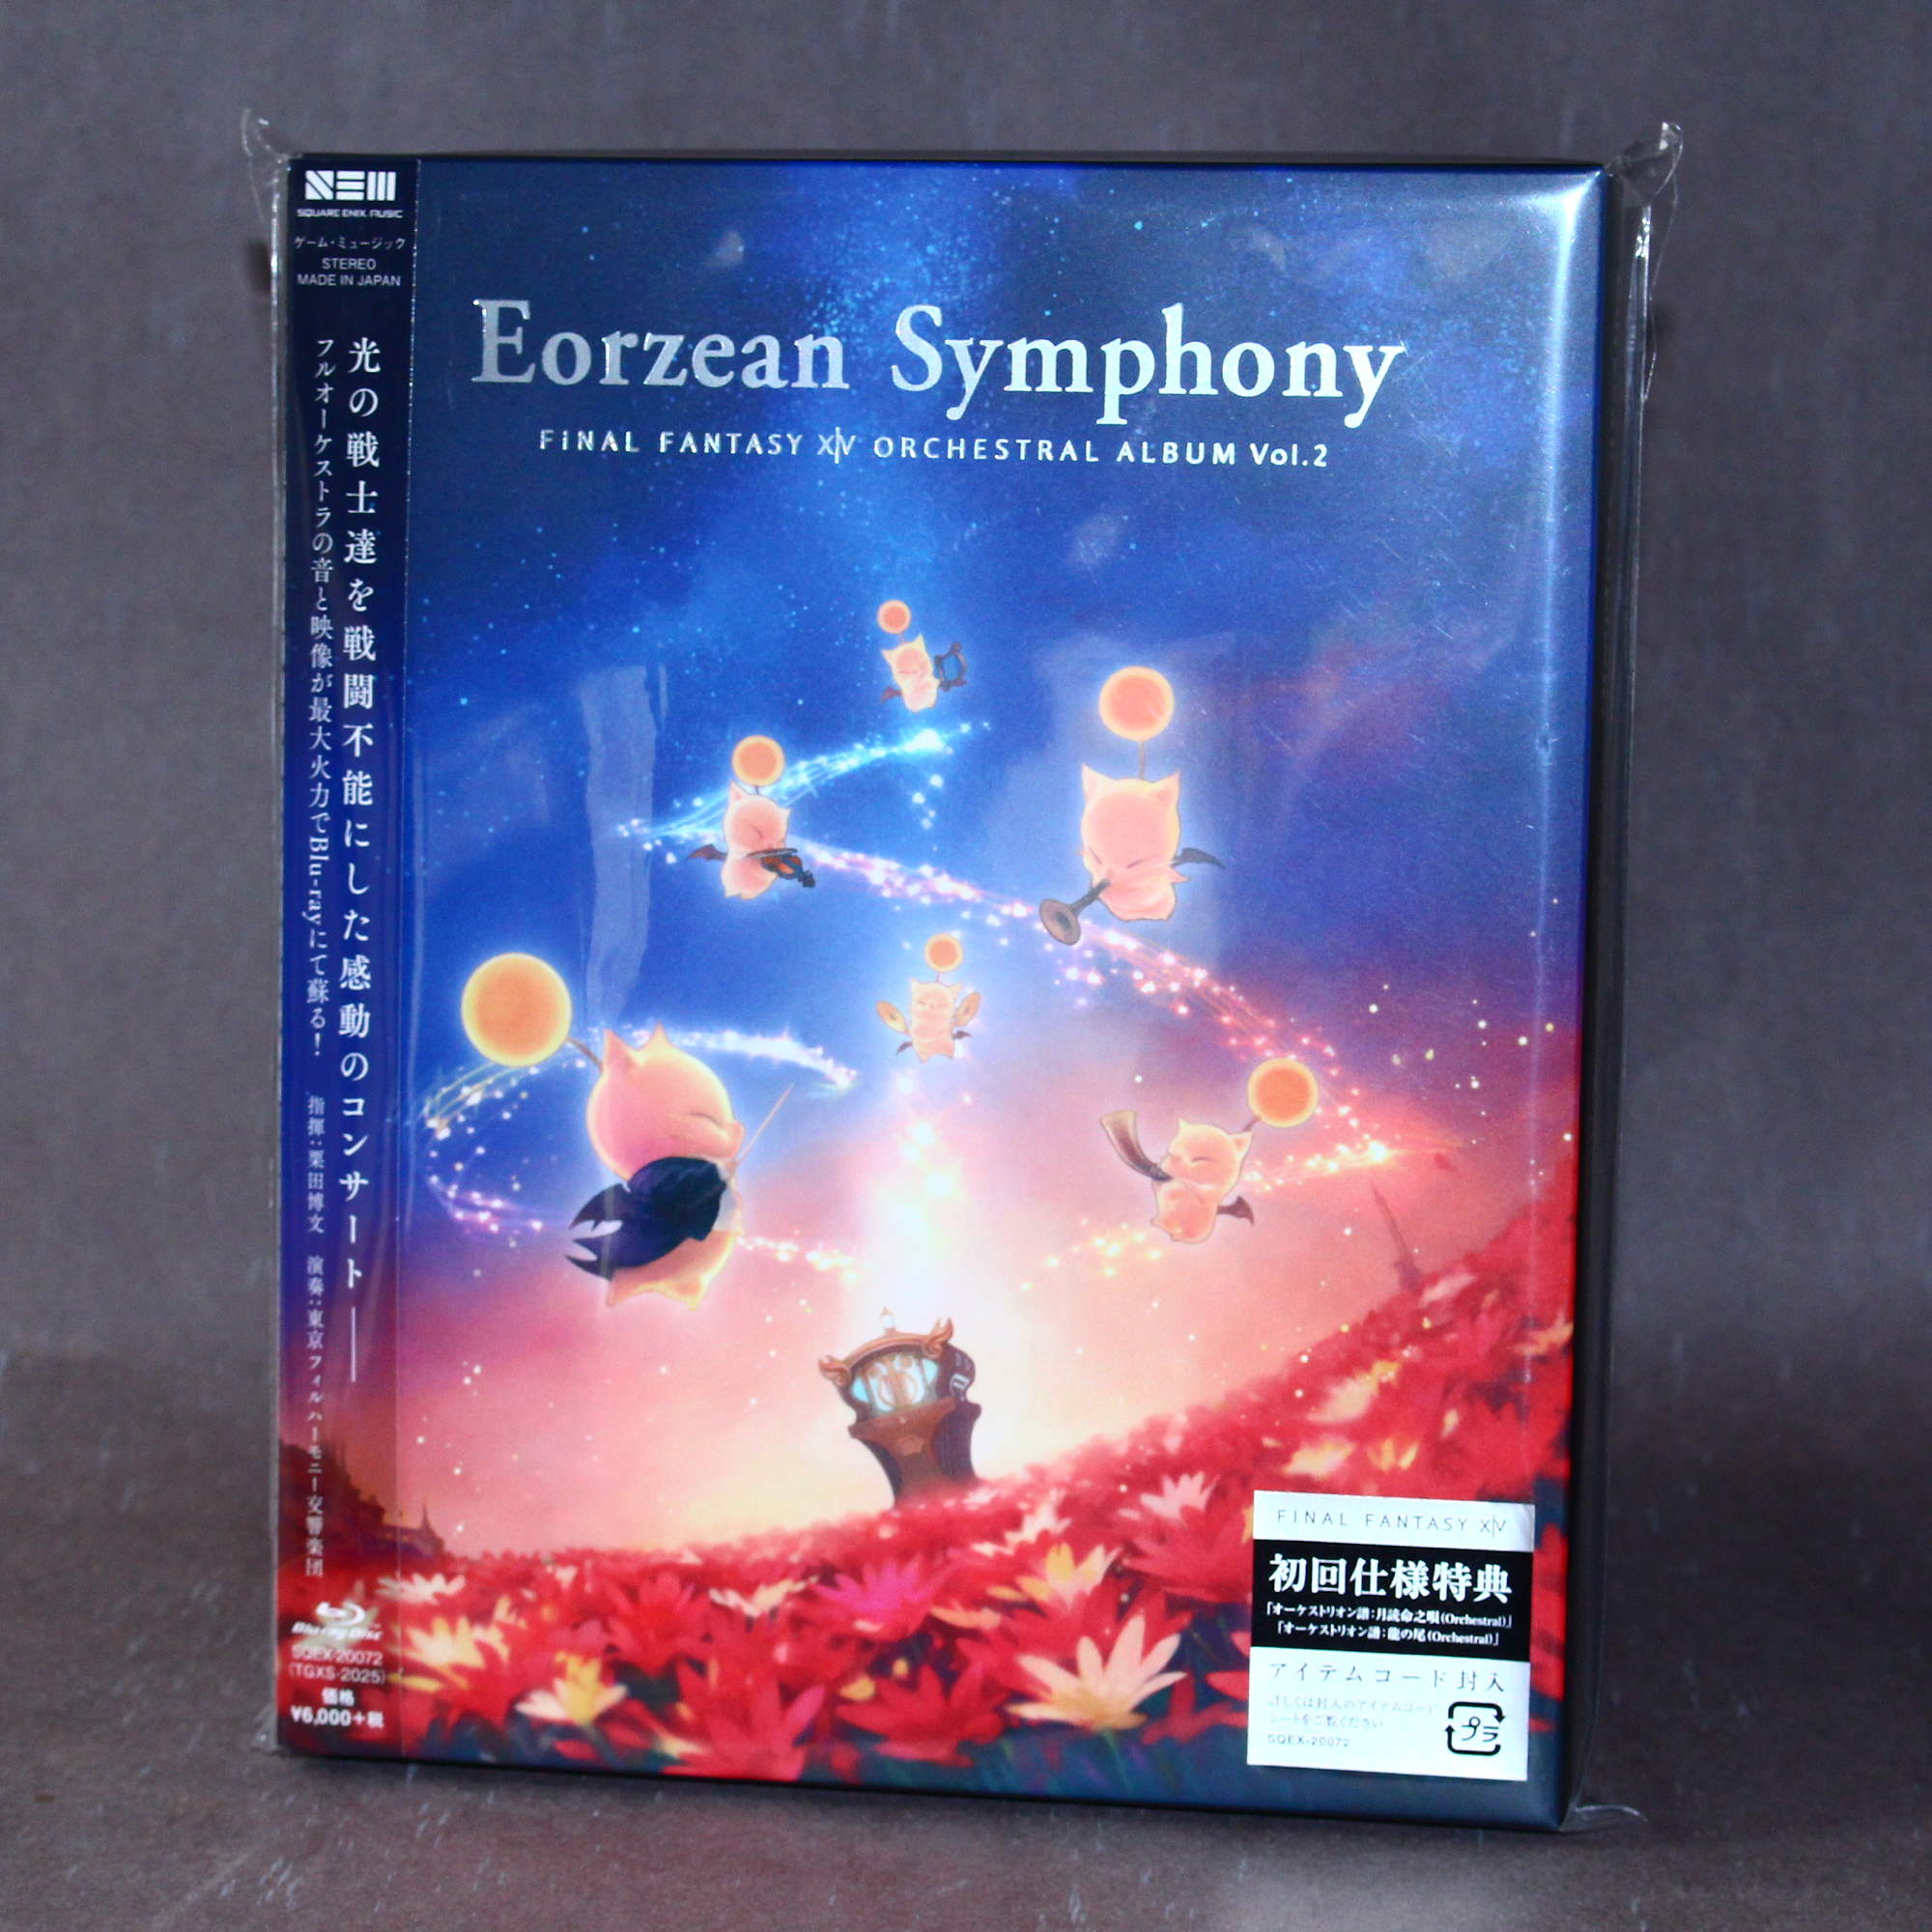 Final Fantasy XIV Eorzean Symphony Orchestral Album Vol Blu-ray – 